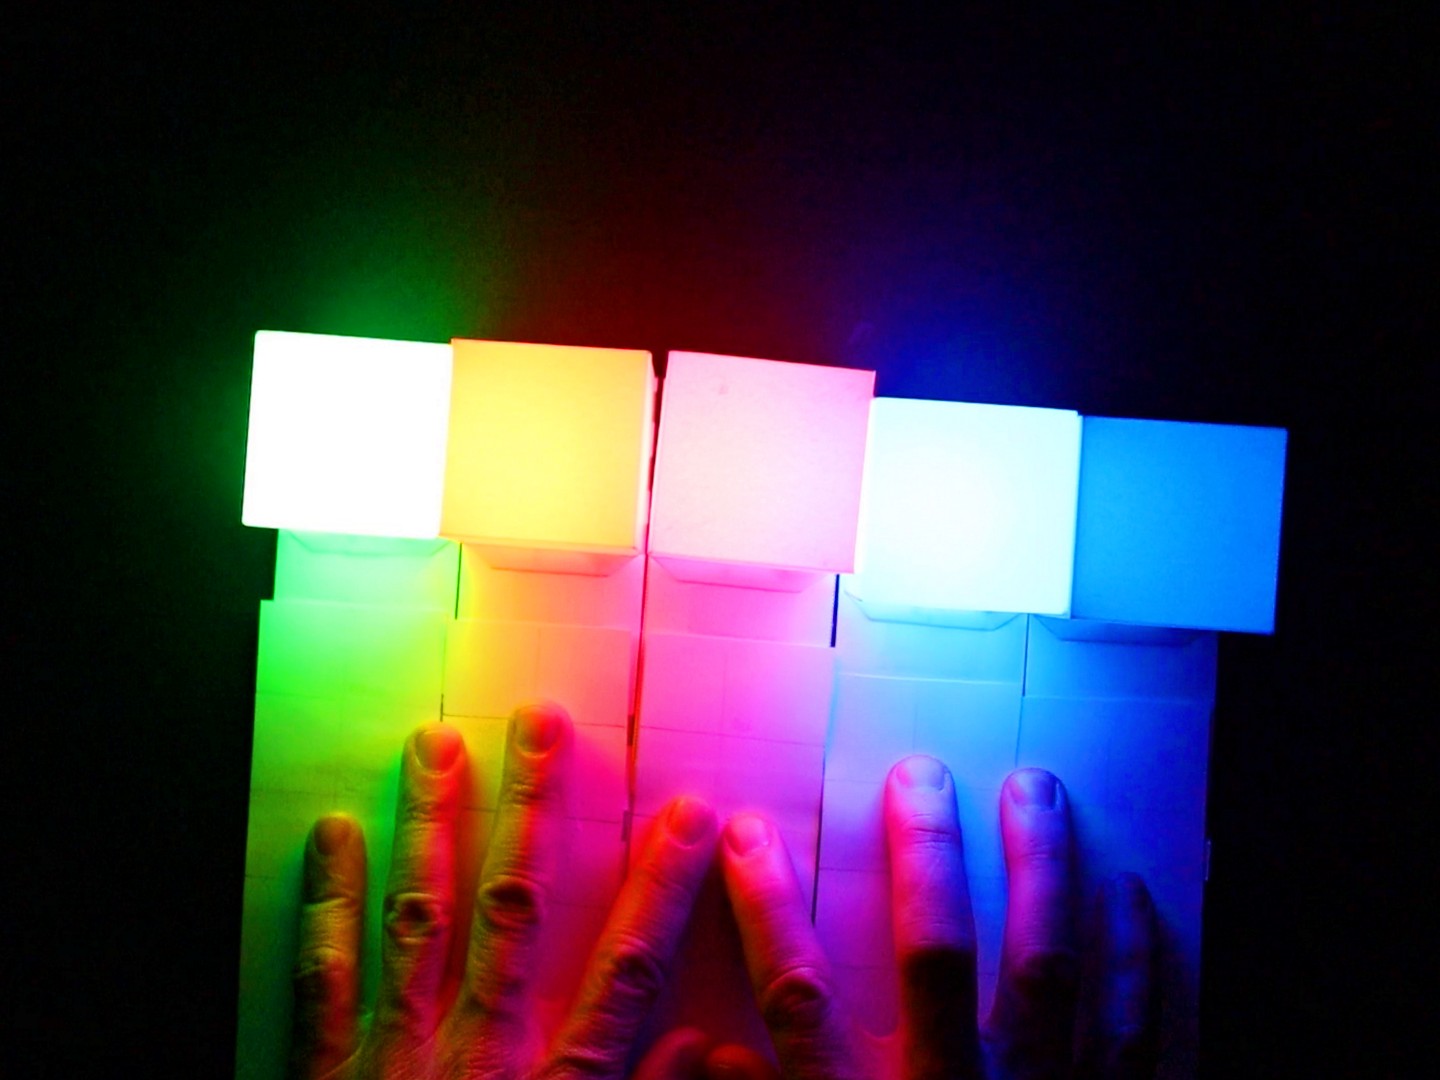 LED-beleuchtete Papier-Würfel in verschiedenen Farben, die durch zwei Hände berührt werden